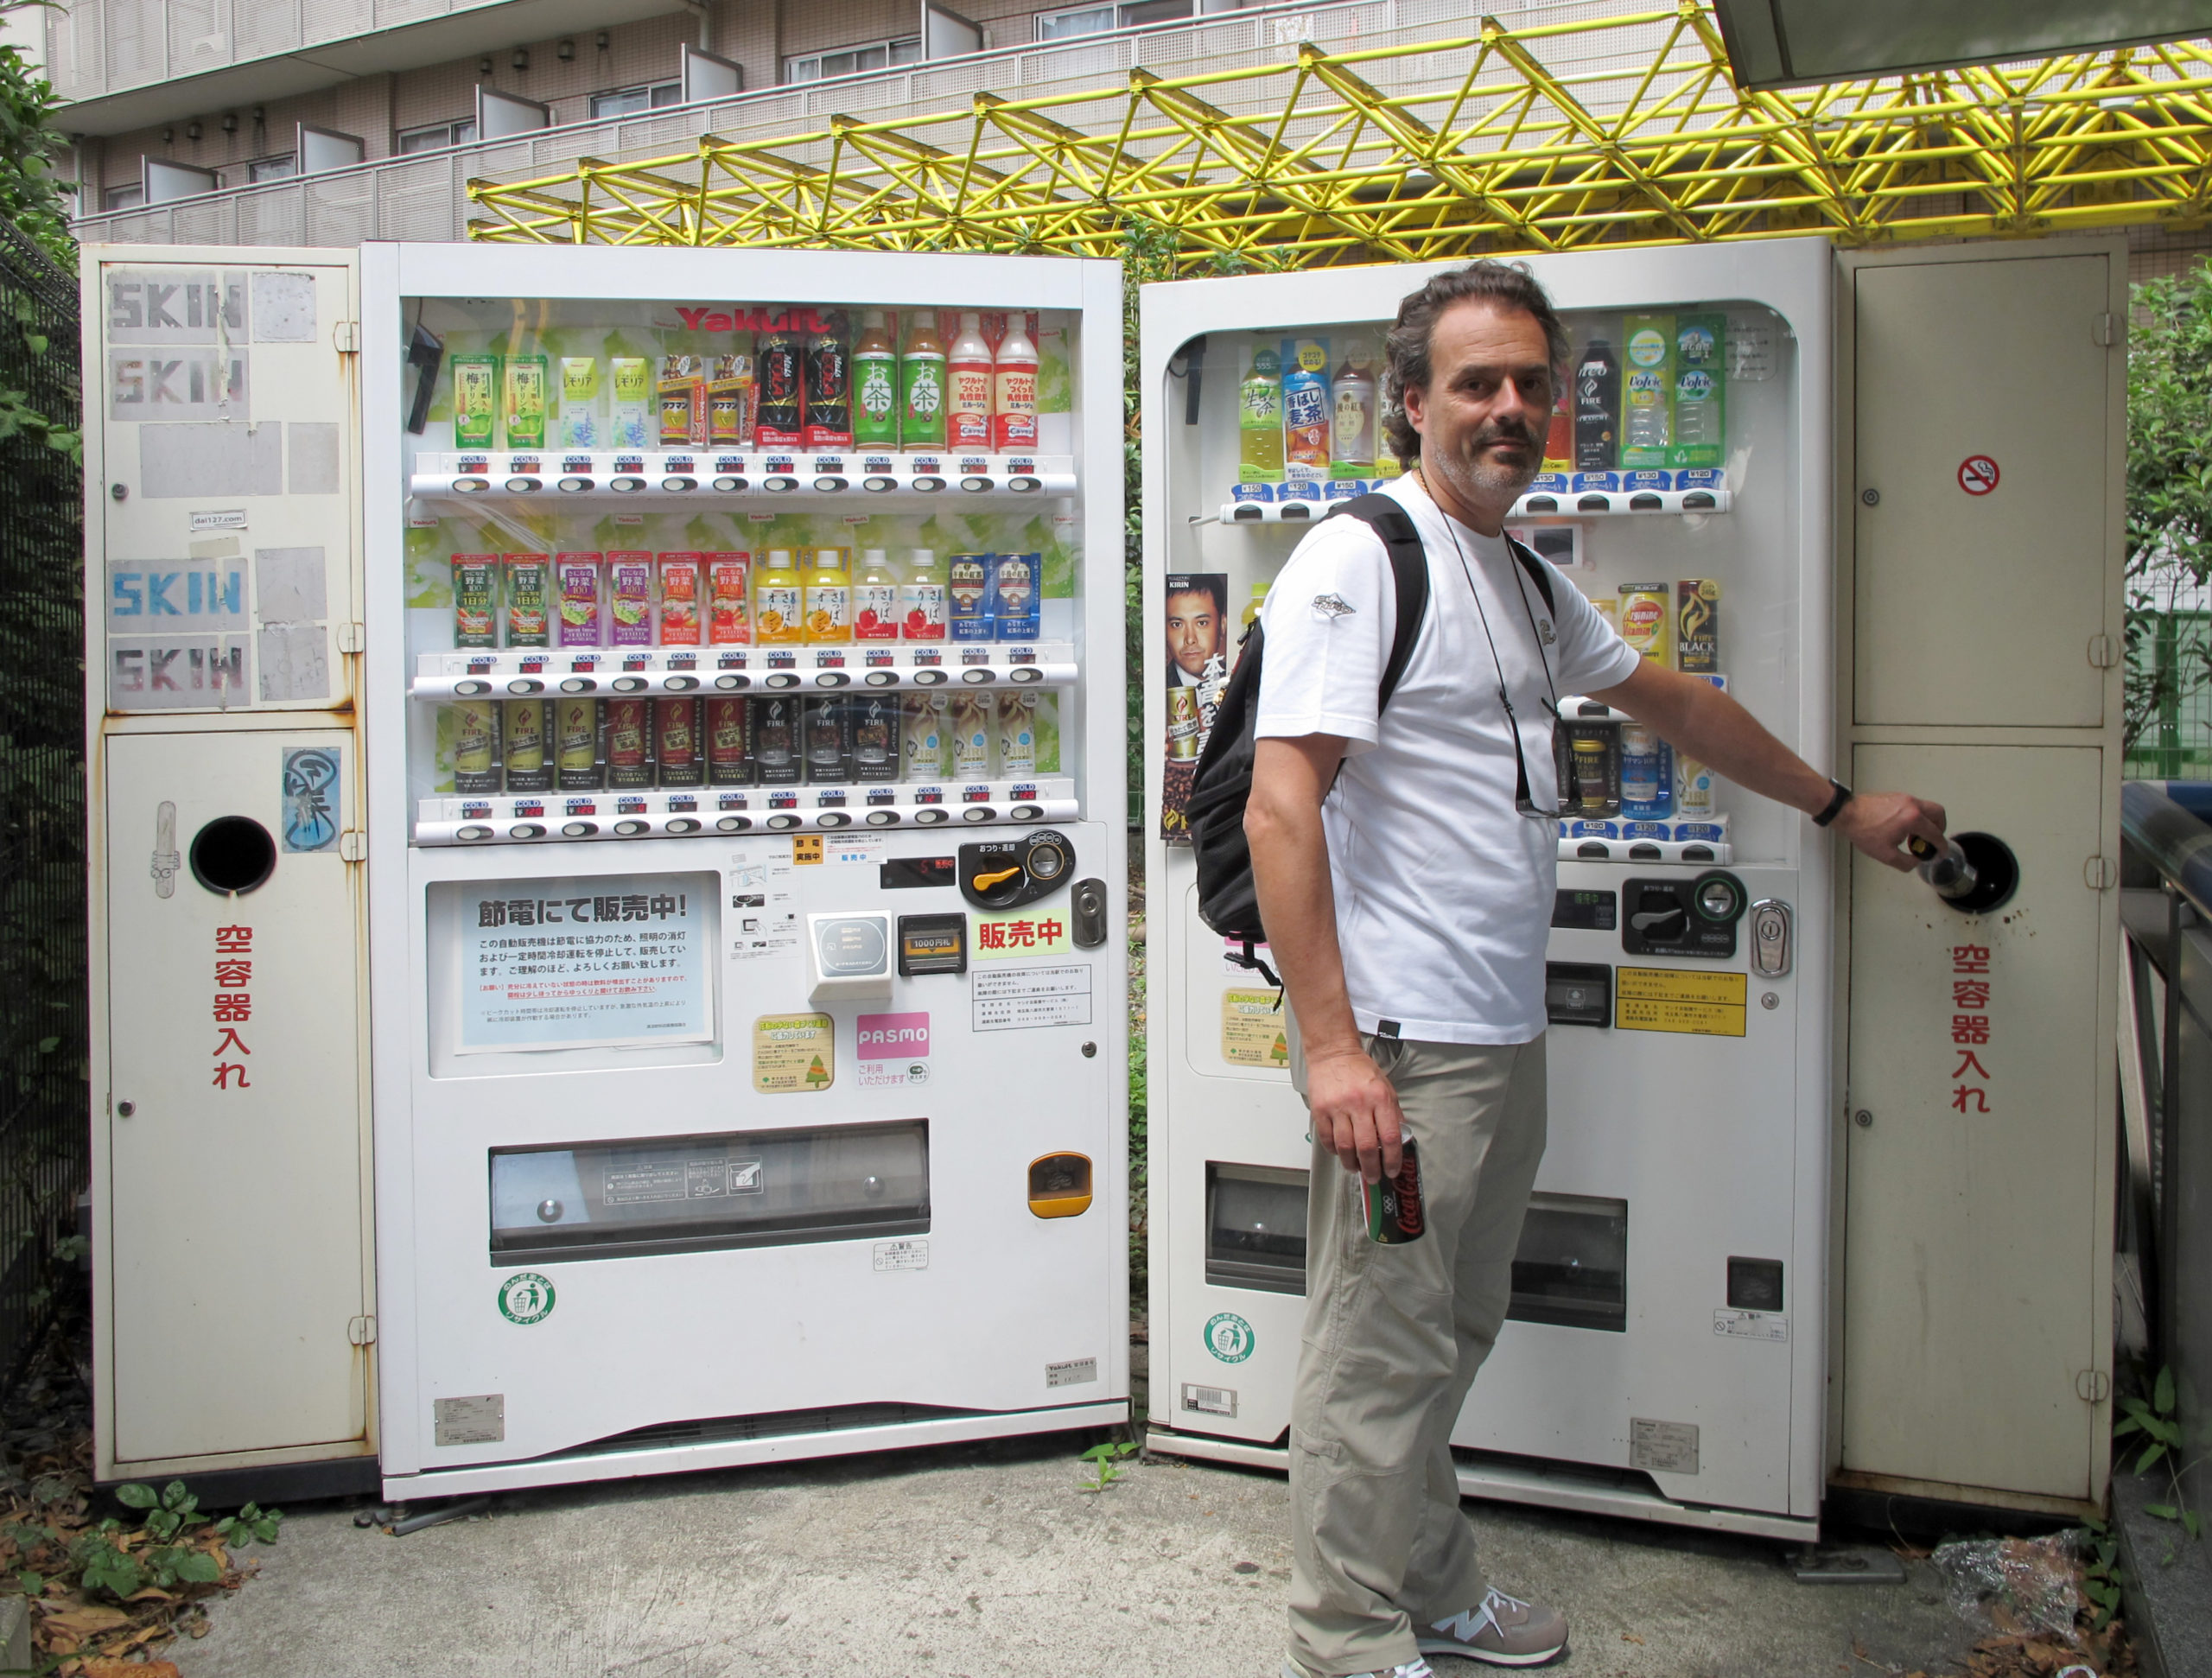 La locura de las máquinas expendedoras en Japón